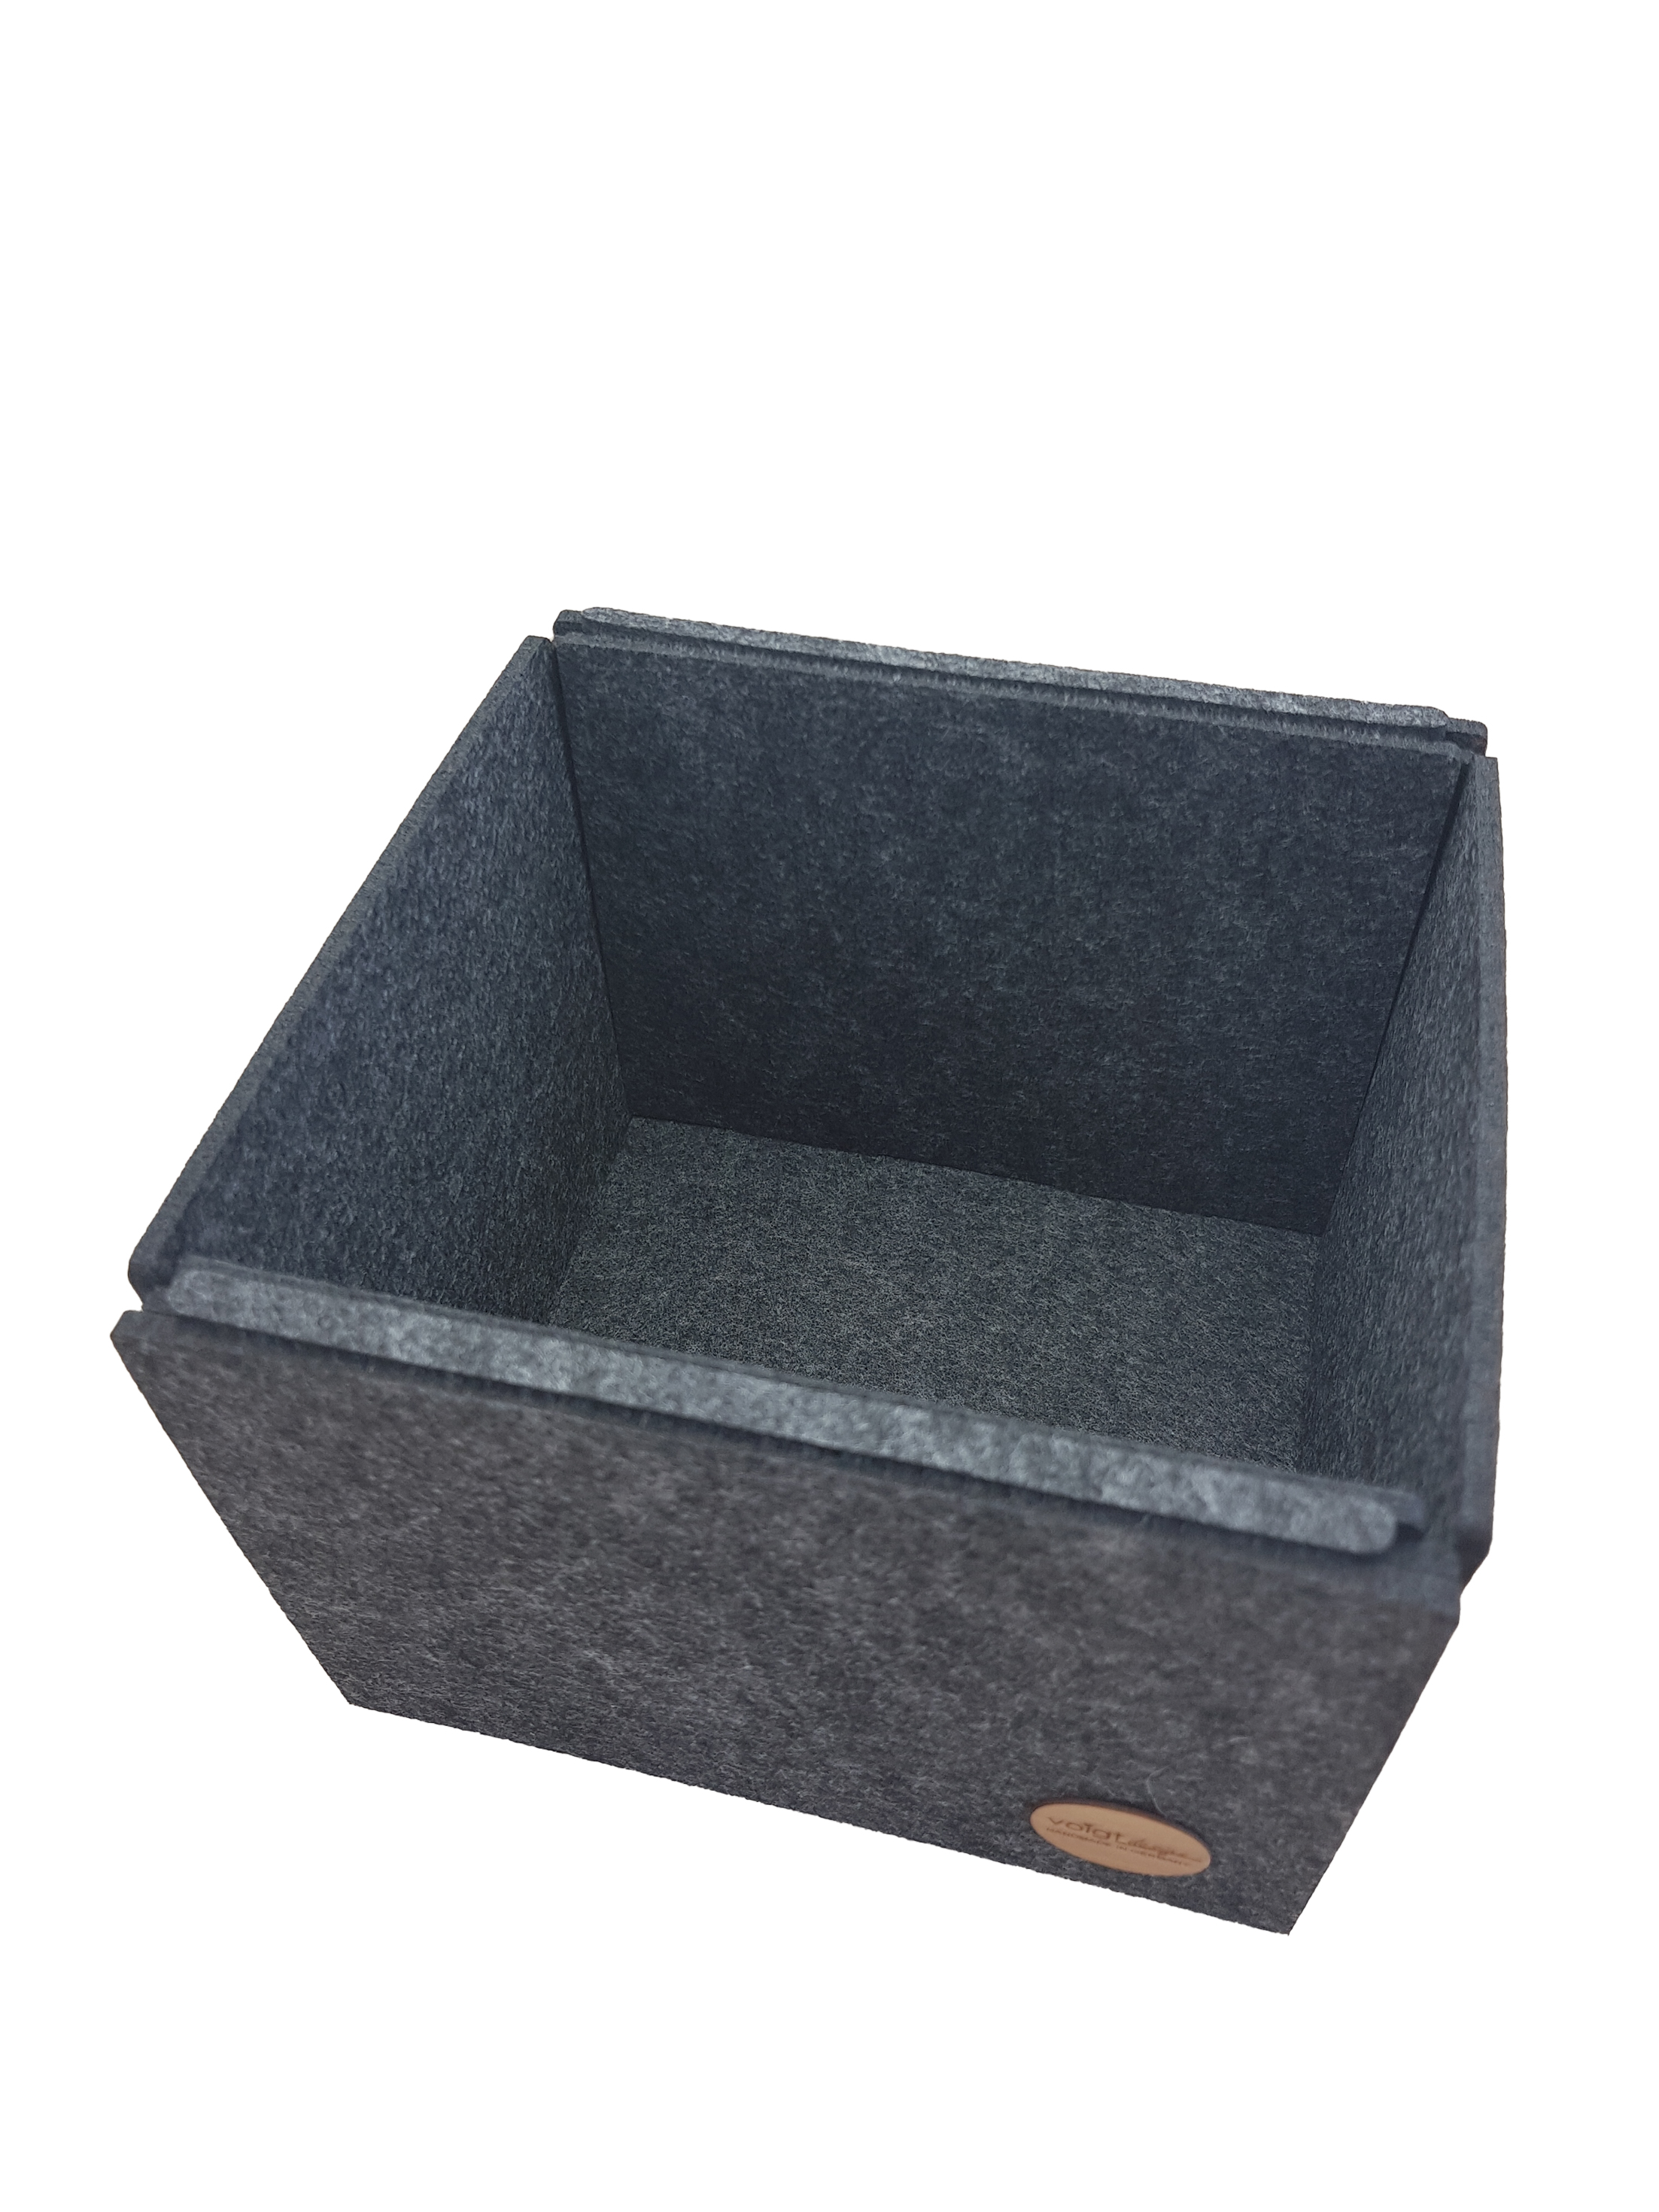 Aufbewahrungsbox Aufbewahrung Ordnung Schubladenbox Regal Schrank-Korb 3 Größen